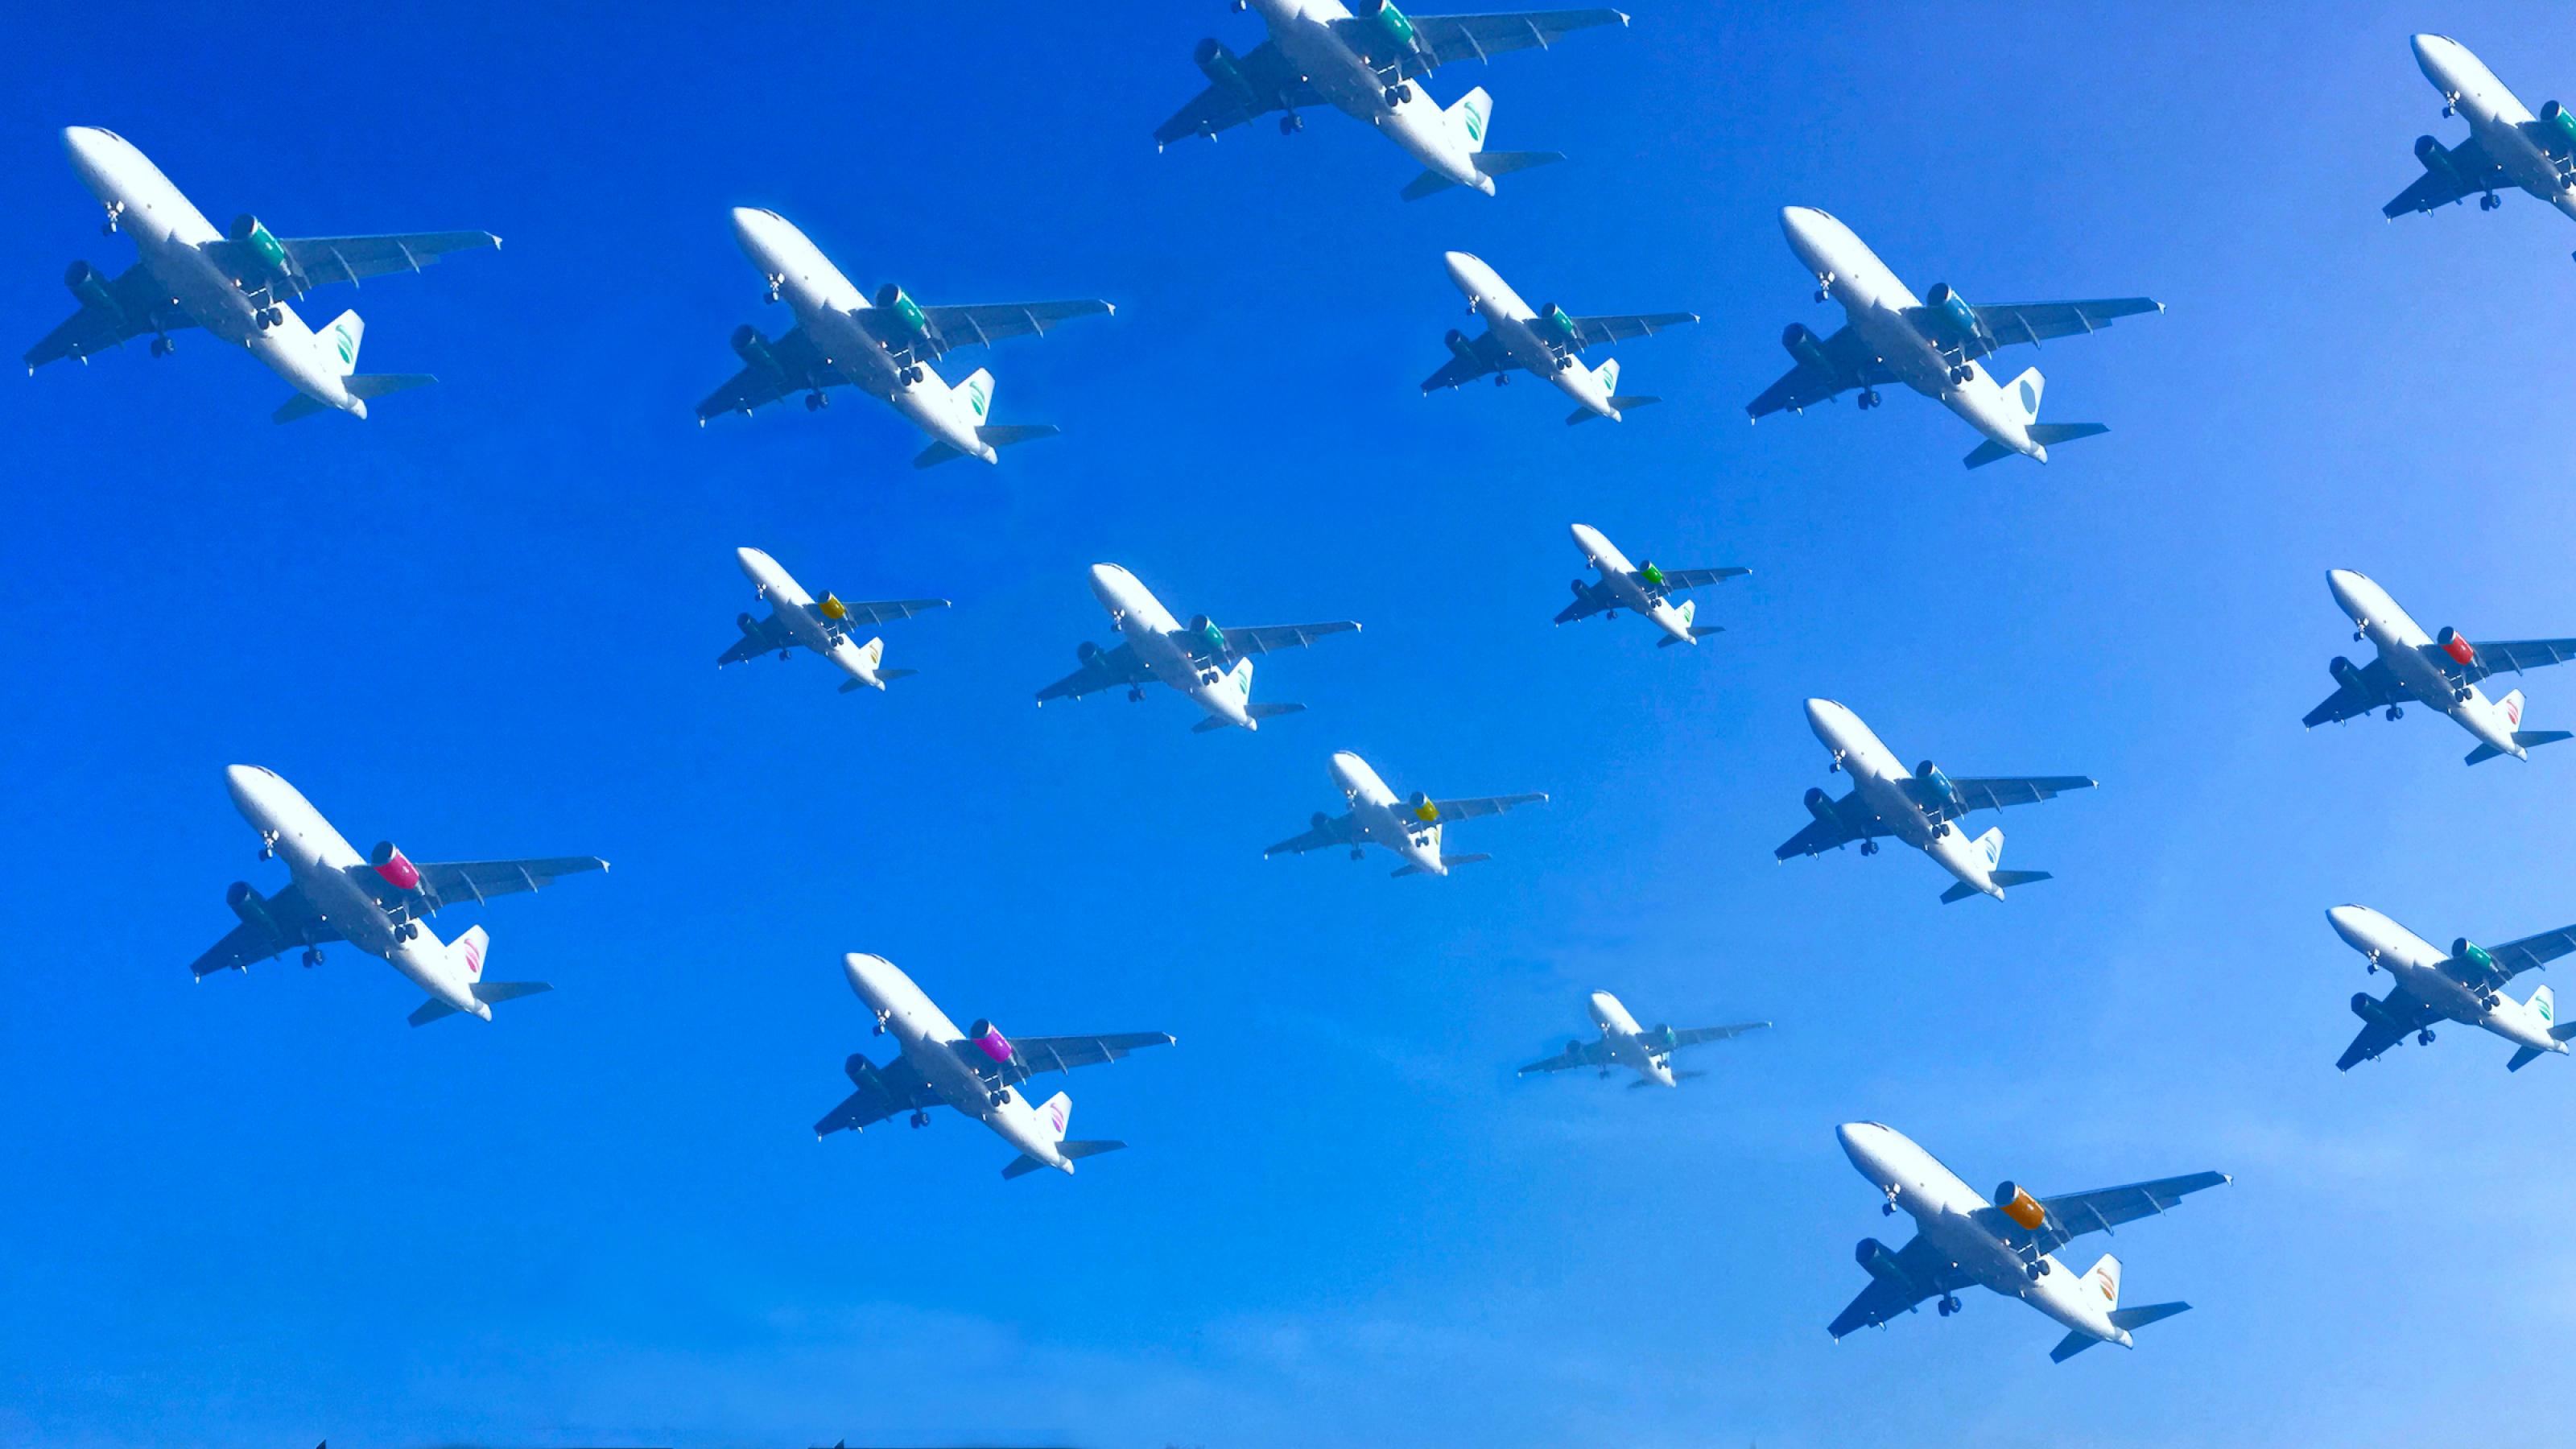 An einem blauen Himmel schwebt in dieser Fotomontage mehr als ein Dutzend Flugzeuge dicht nebeneinander auf den Landeplatz zu.